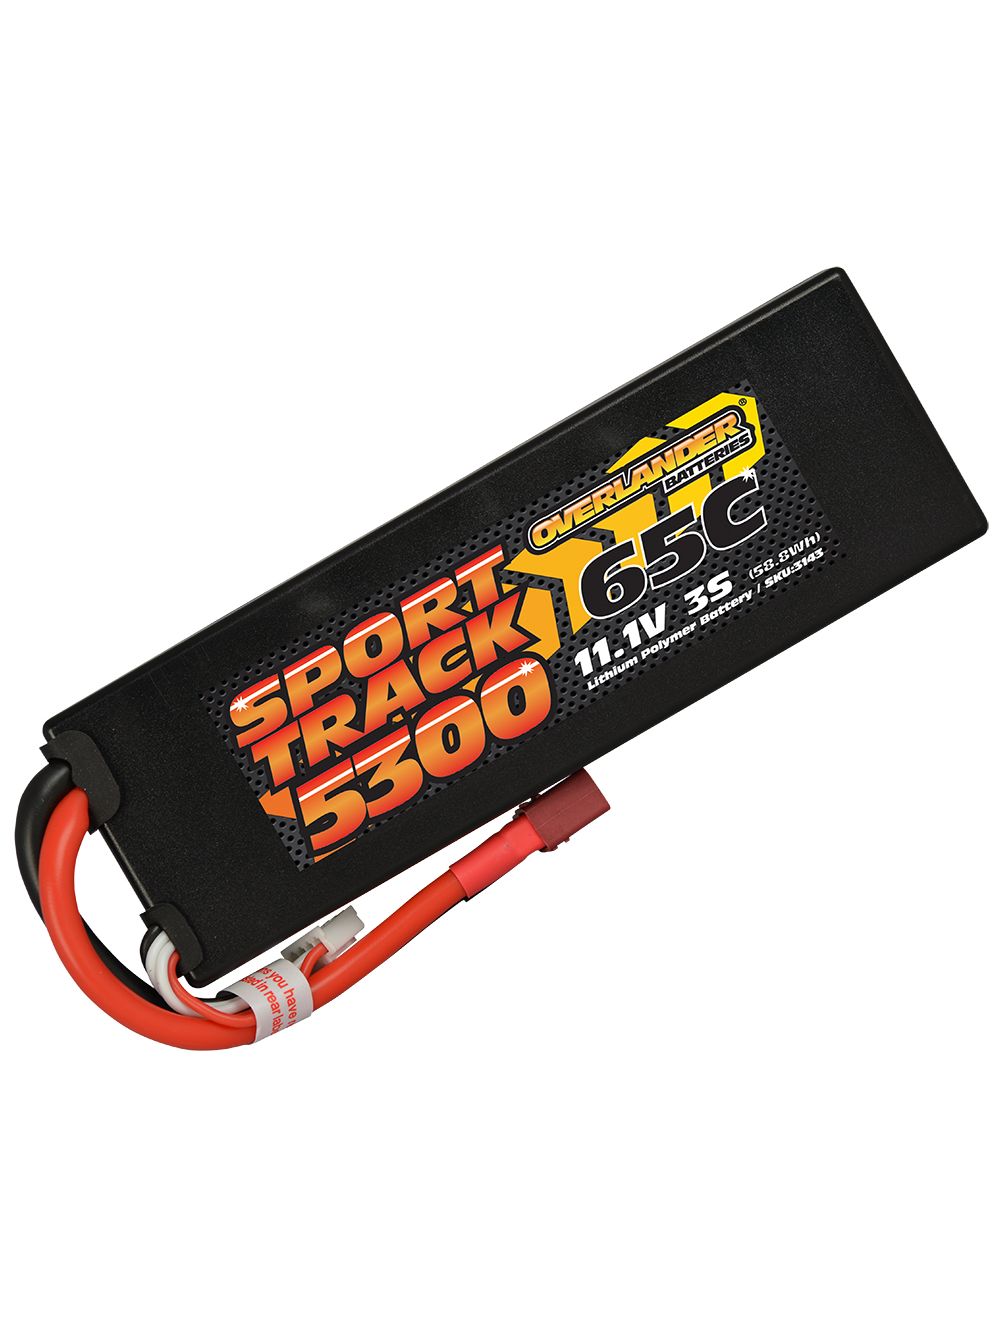 Overlander 5300mAh 11.1V 3S 65C Hard Case Sport Track LiPo Battery - Deans Connector 3143